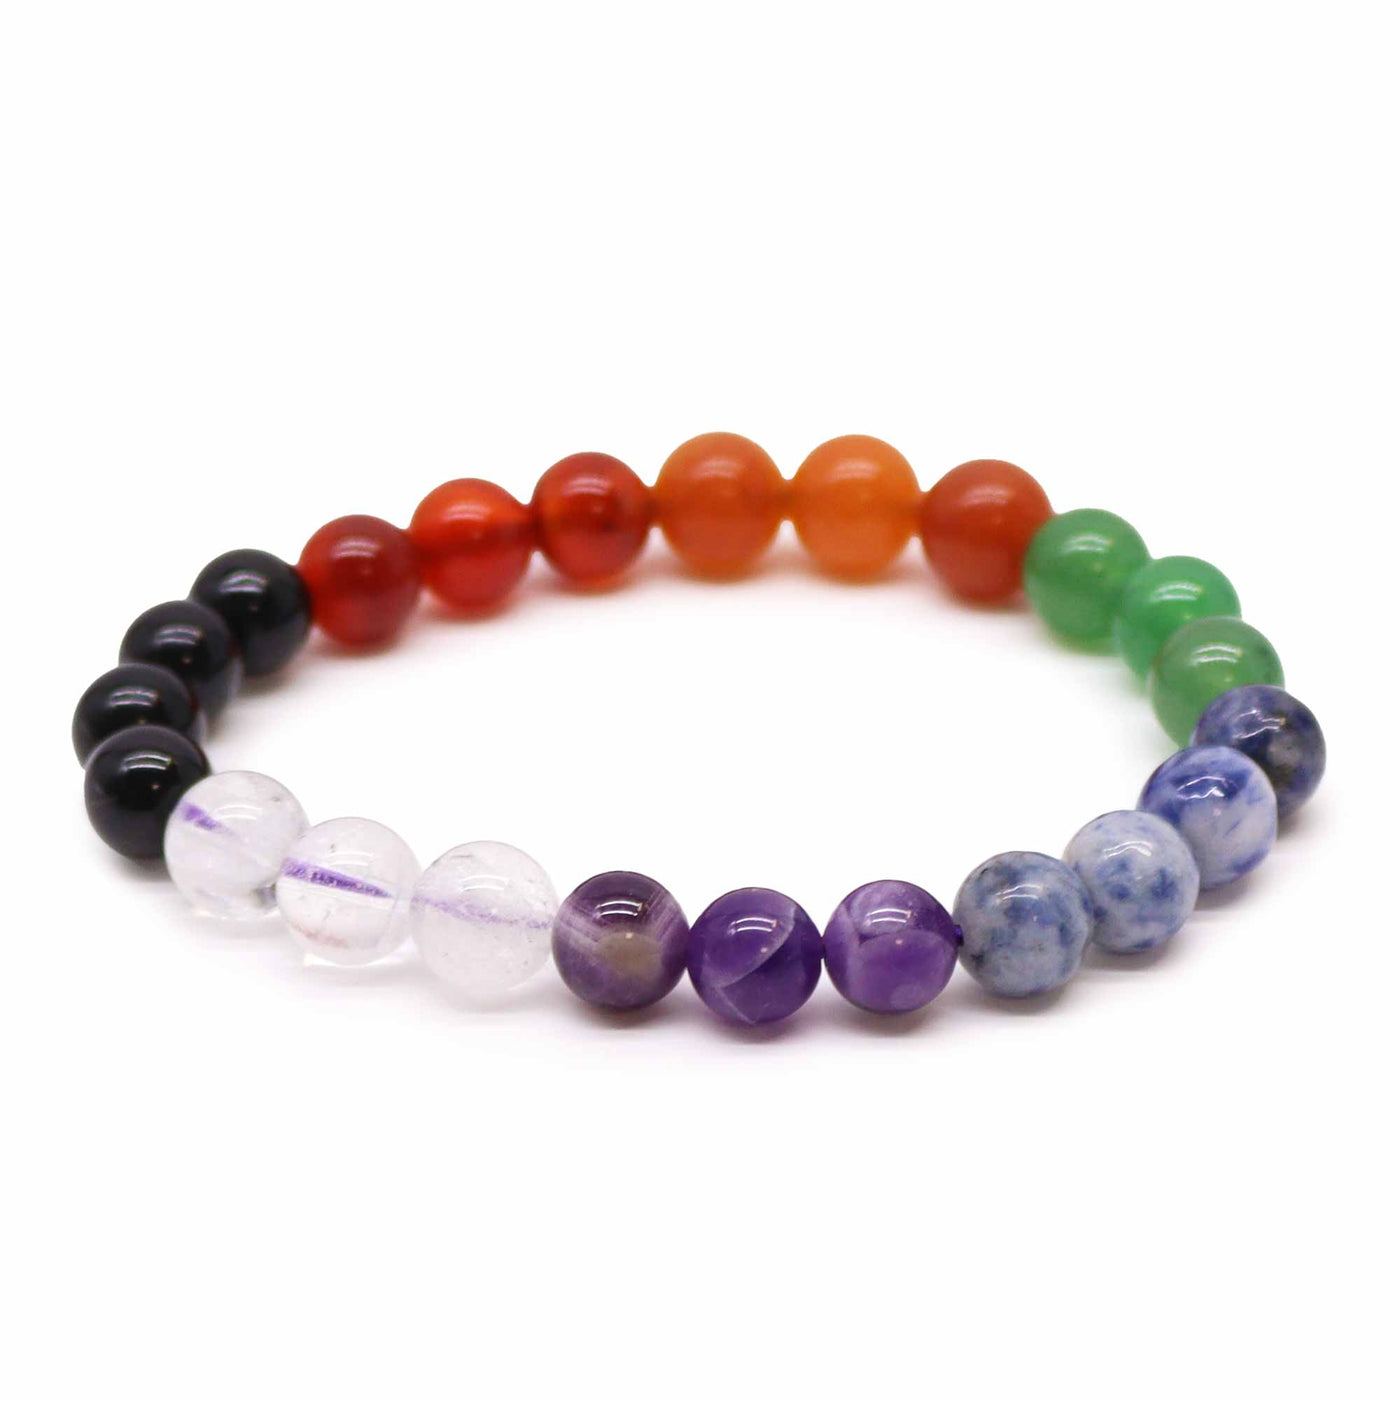 Unisex Chakra Gemstone Beads Bracelet.